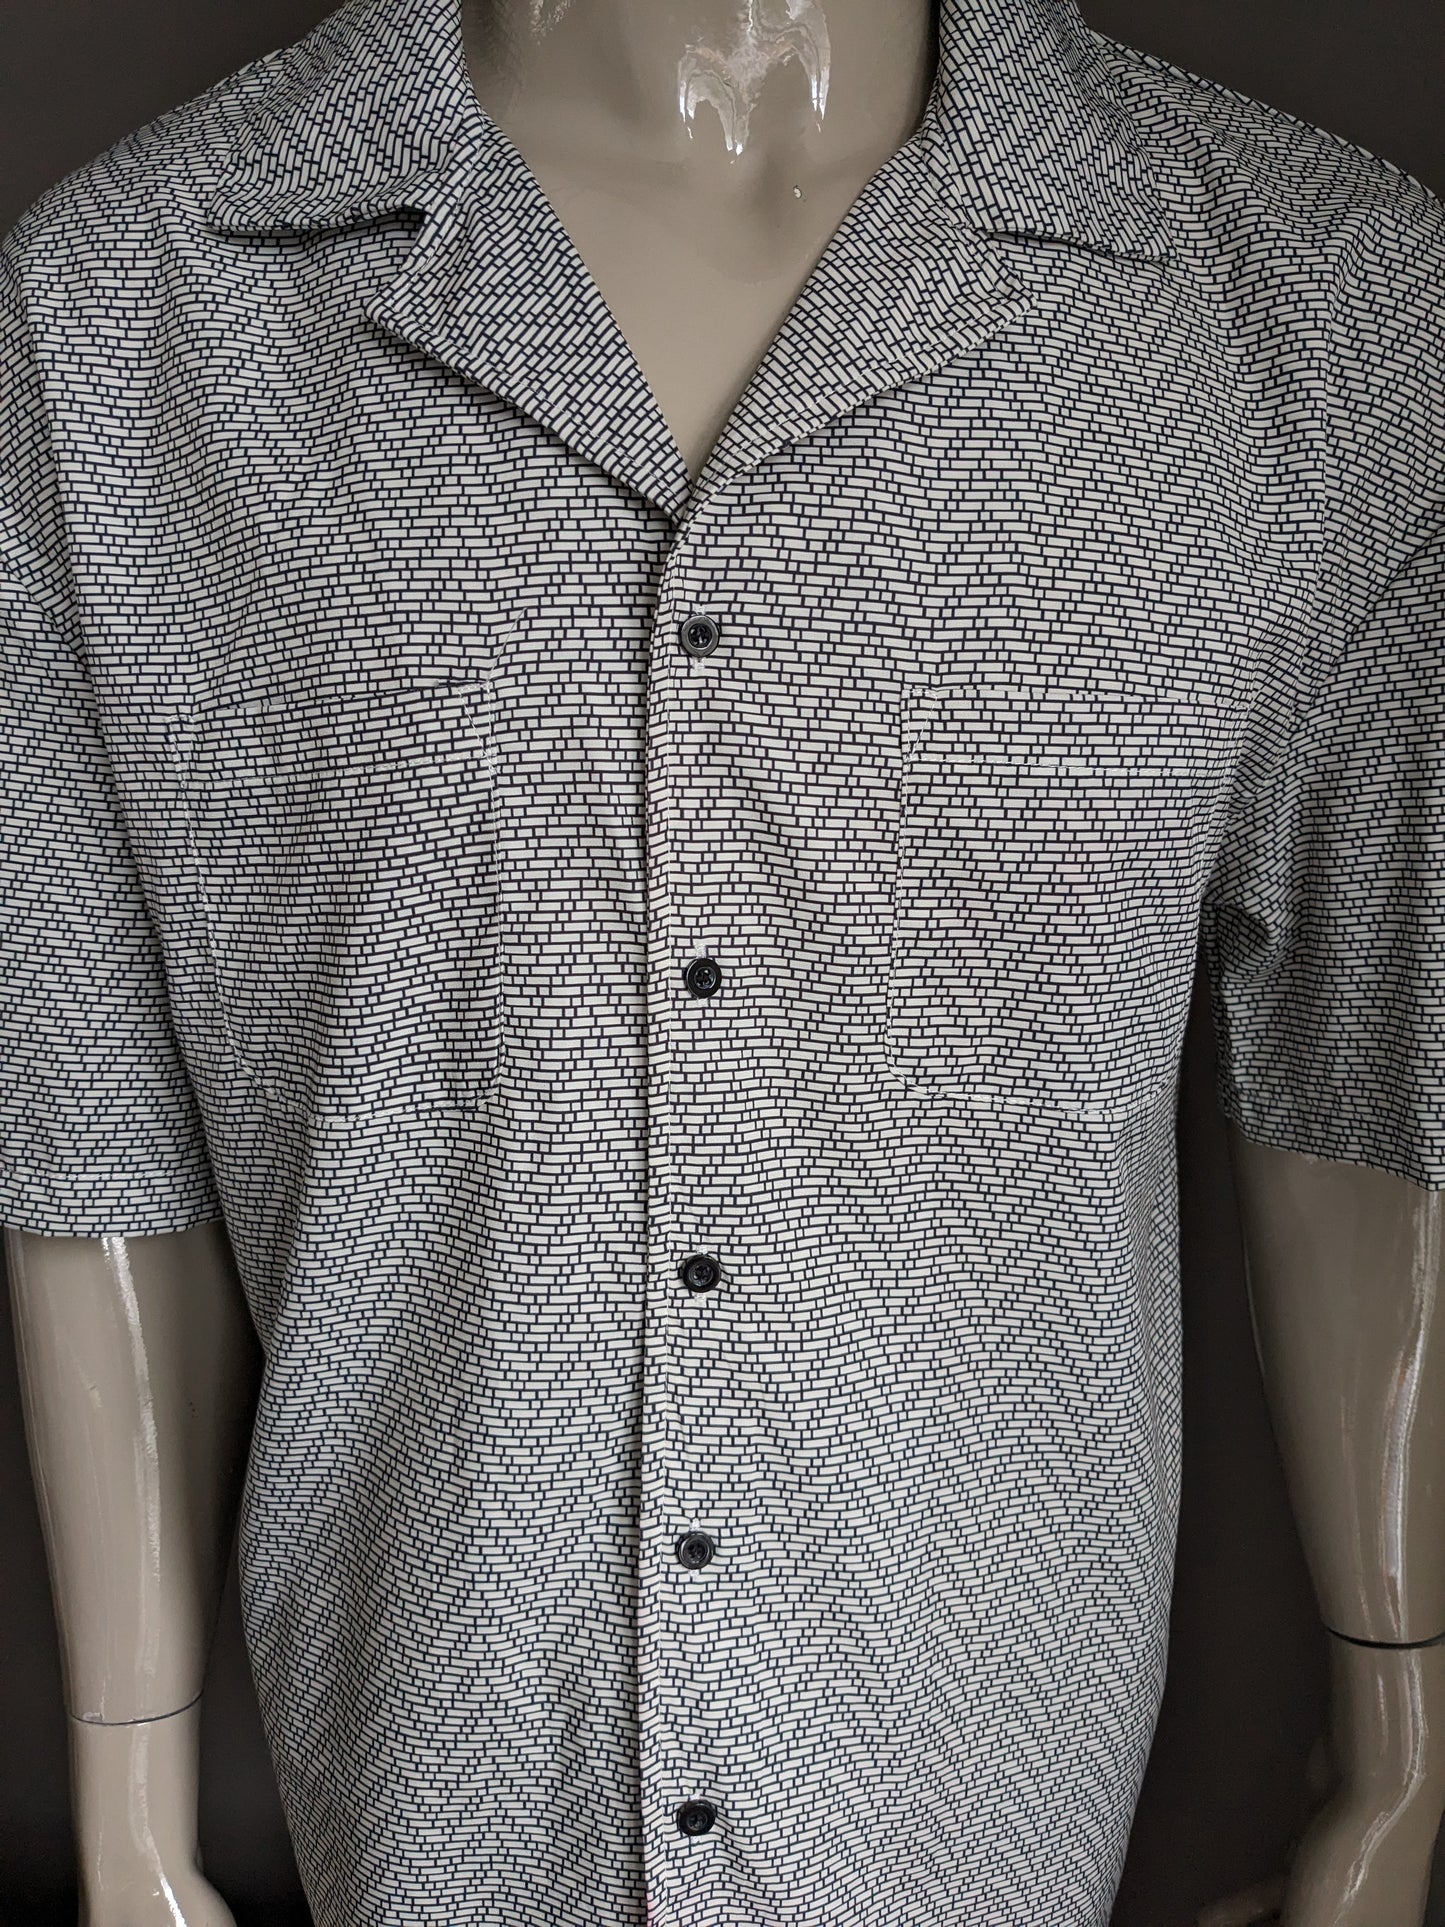 Vintage -Shirt Kurzarm. Schwarz -Weiß -Druck. Größe L.